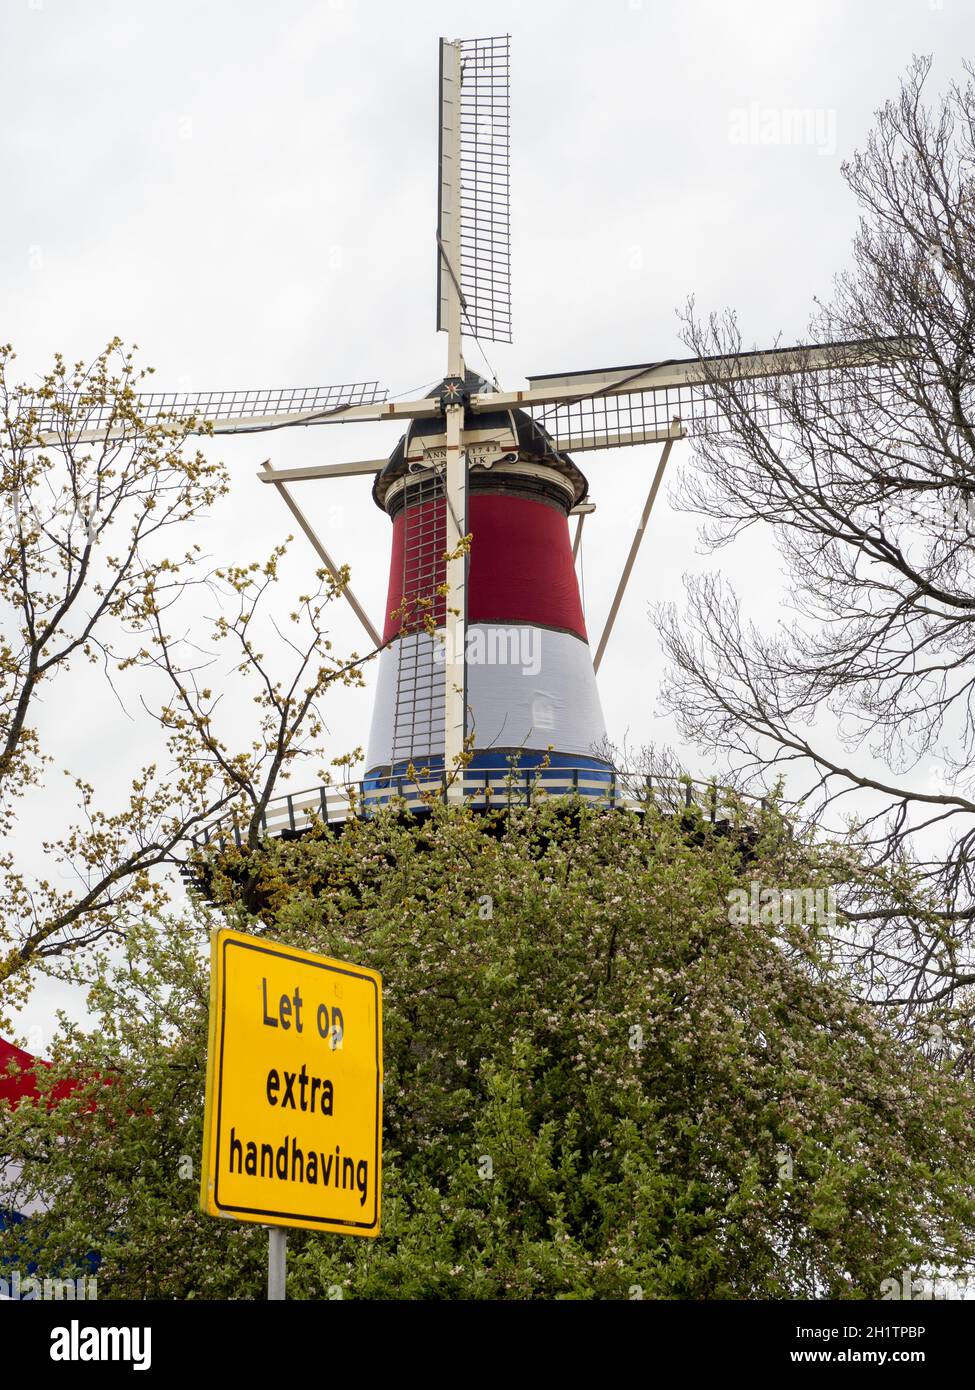 Corona Avertissement „Laissez op extra HandHing“ et Moulin et Musée„de Valk“ peint avec des couleurs nationales – Leiden Banque D'Images